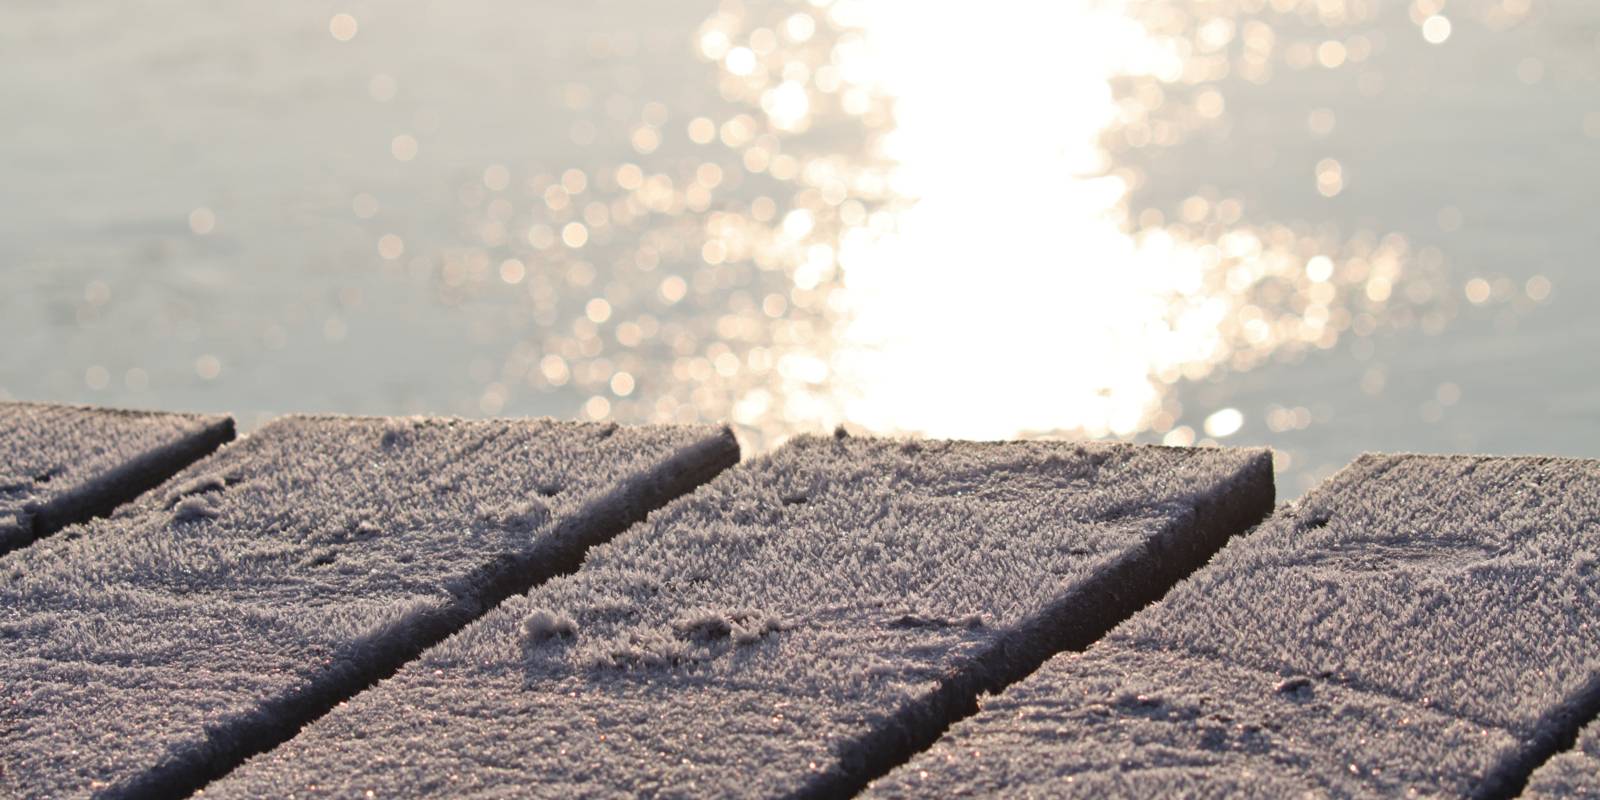 Blick über einen von Eis überzogenen Steg. Hinter und unter den vereisten Holzbrettern schimmert eine von der Sonne beschienene Wasserfläche.